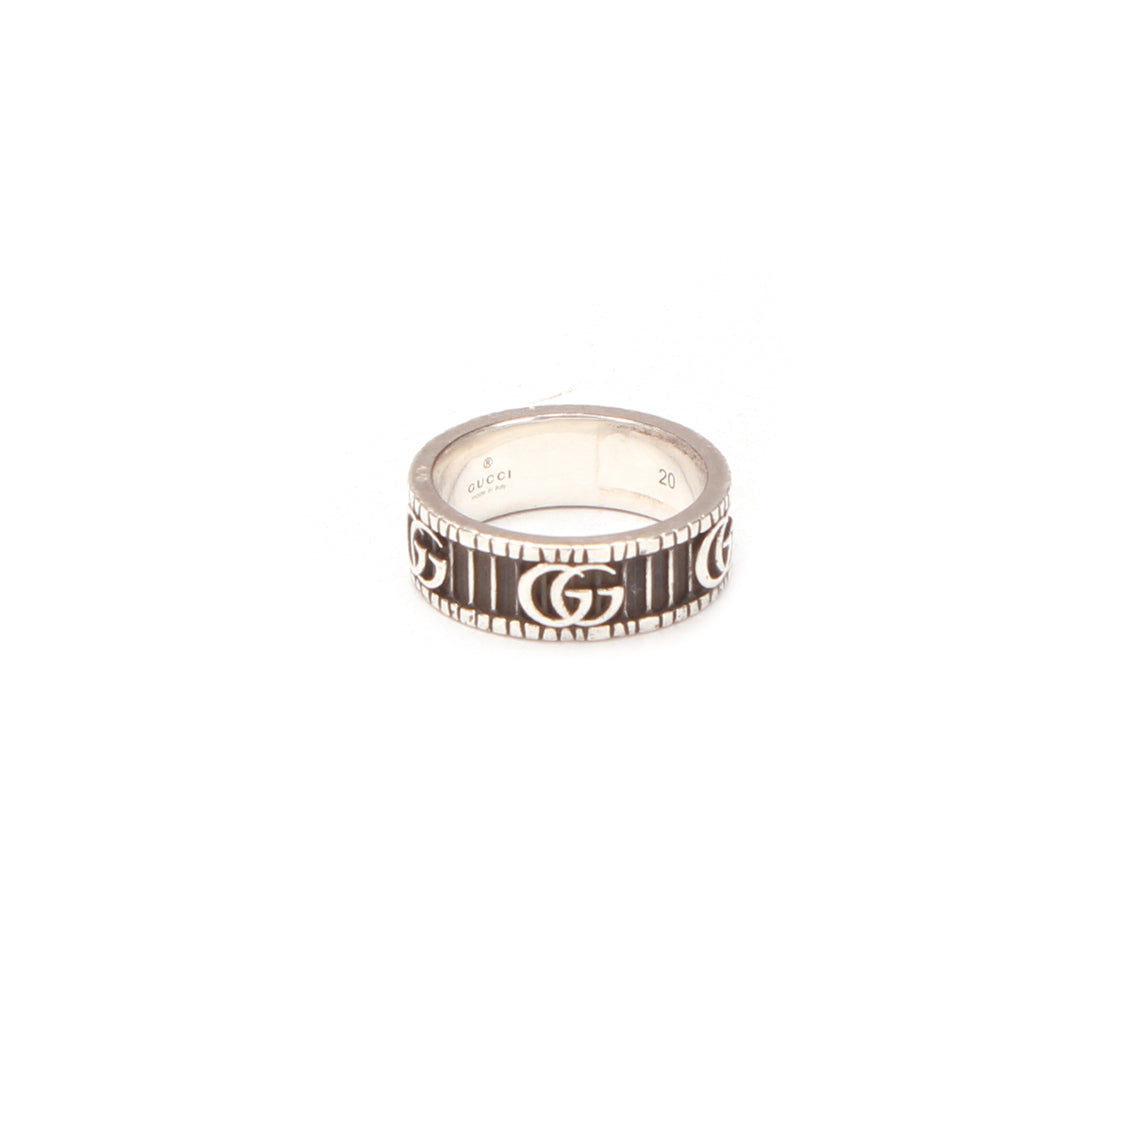 Silver GG Ring